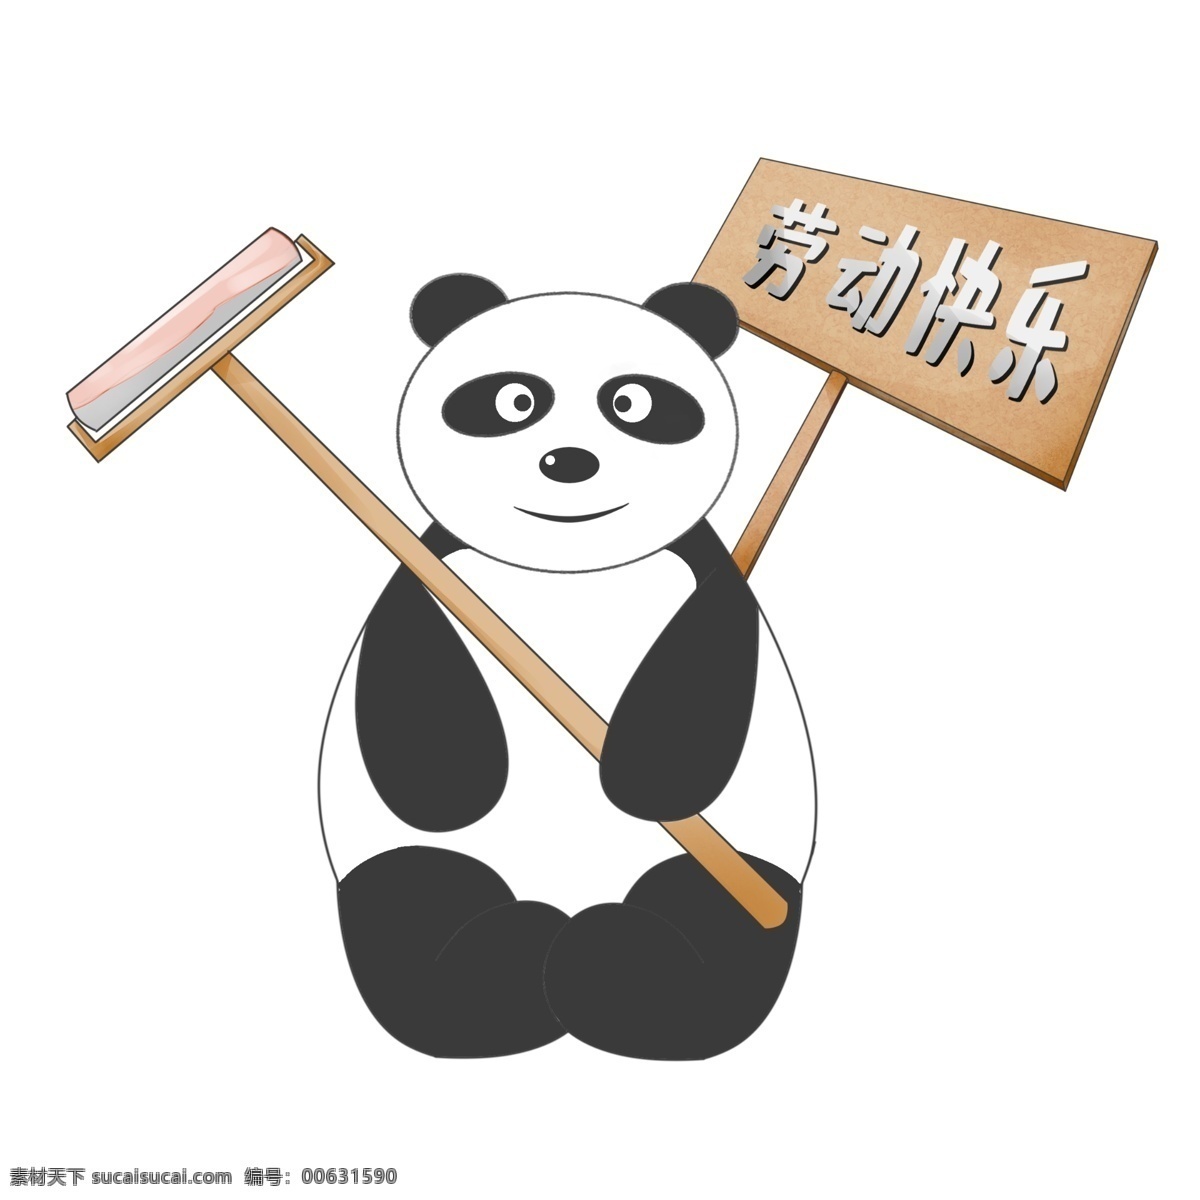 劳动节 可爱 熊猫 插画 可爱的熊猫 卫生的熊猫 卡通的插画 劳动节快乐 卡通插画 动物插画 卫生刷子